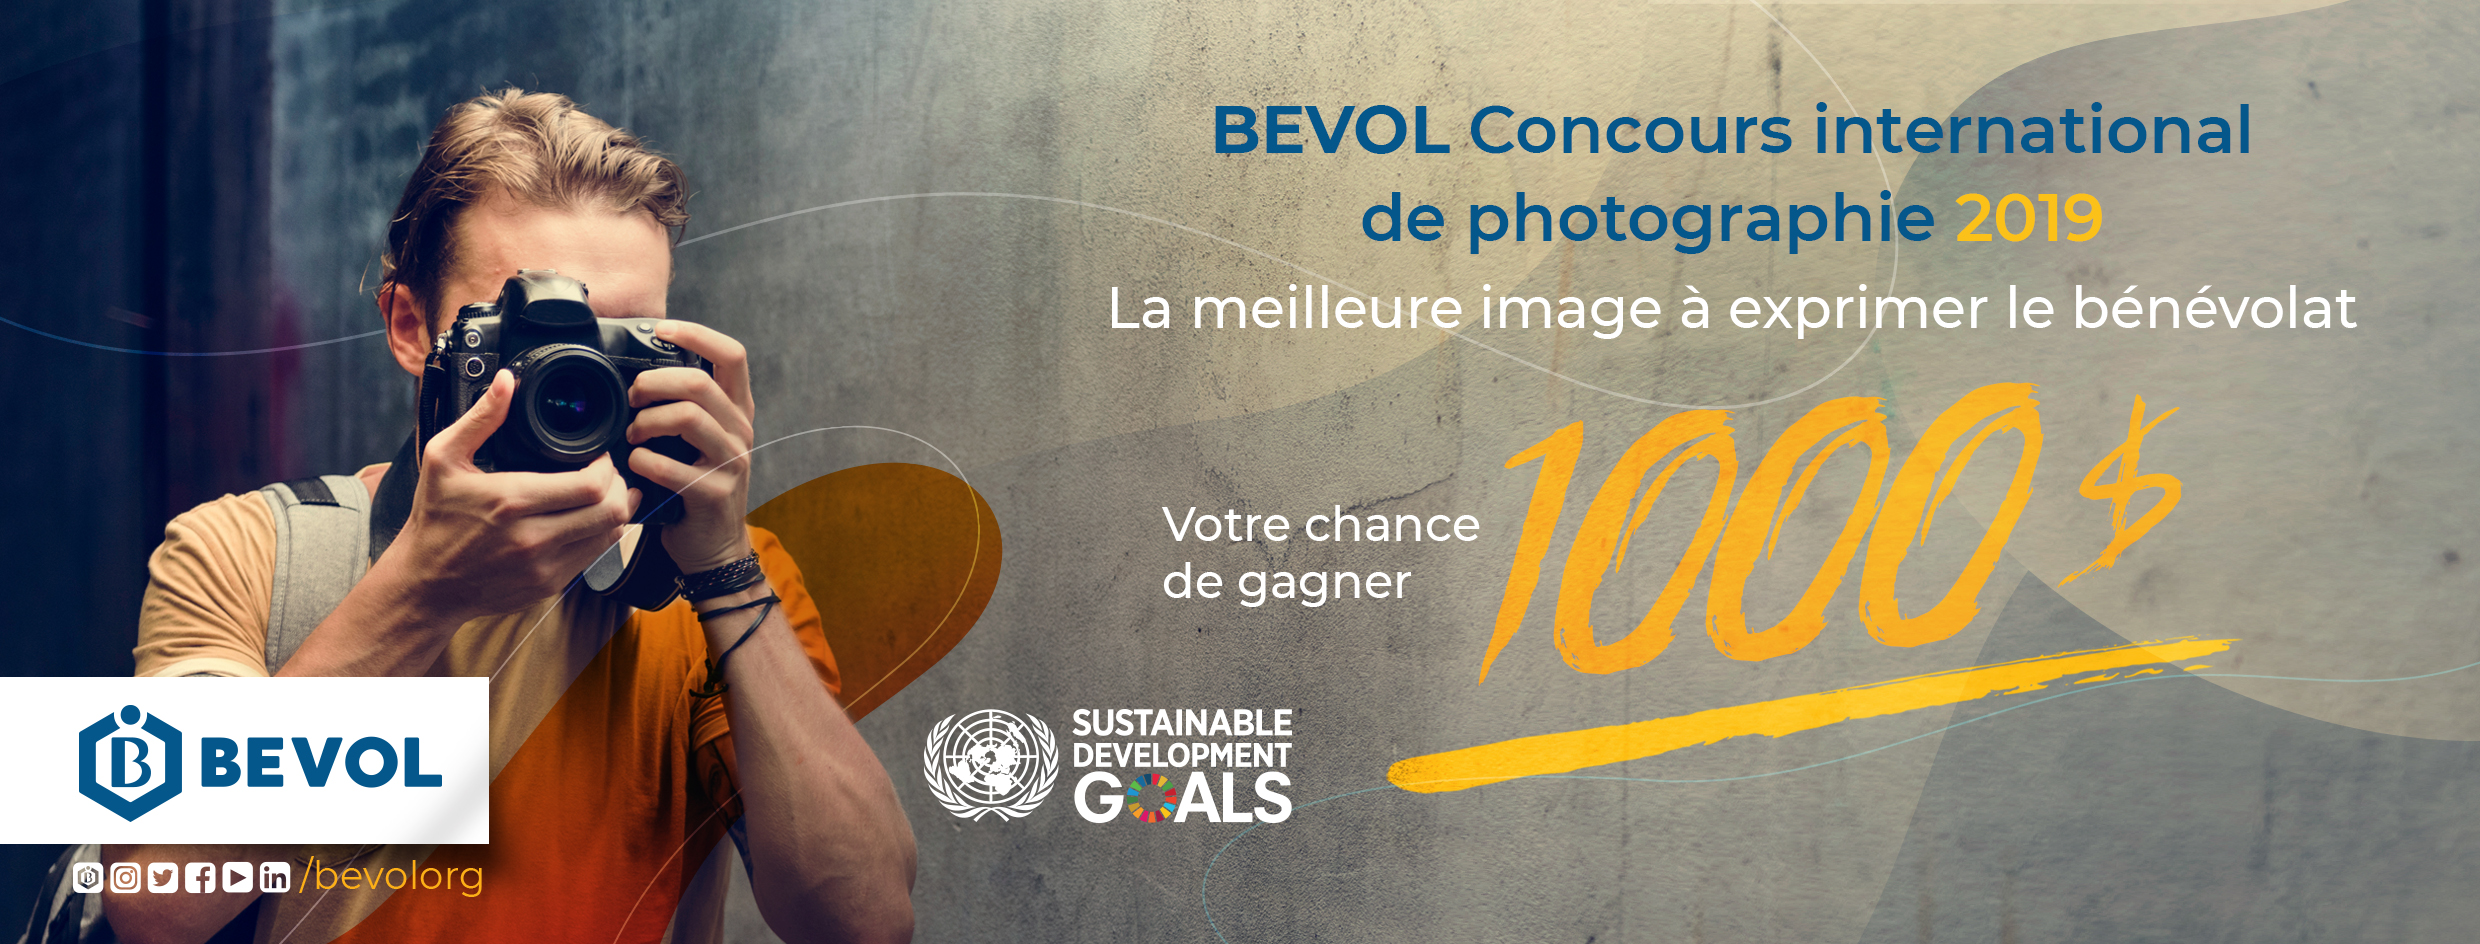 BEVOL Concours international de photographie 2019 La meilleure image à exprimer le bénévolat